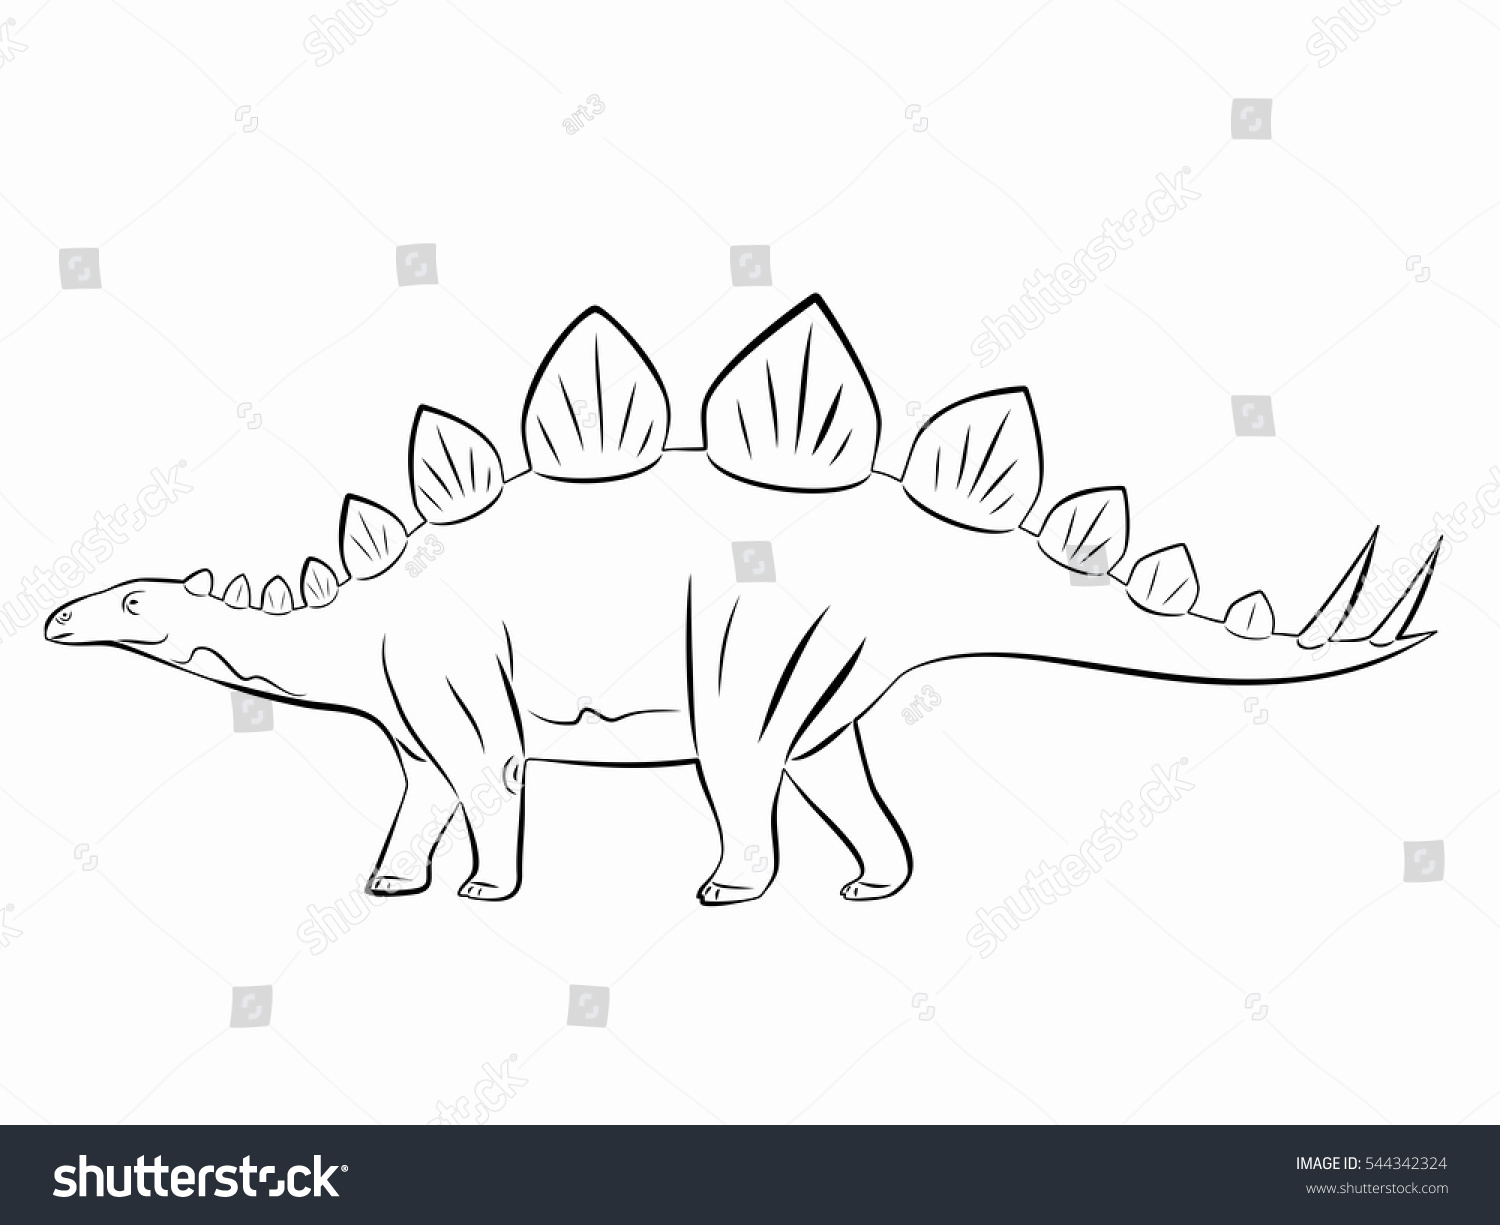 Стегозавр в разных ракурсах рисунок перед